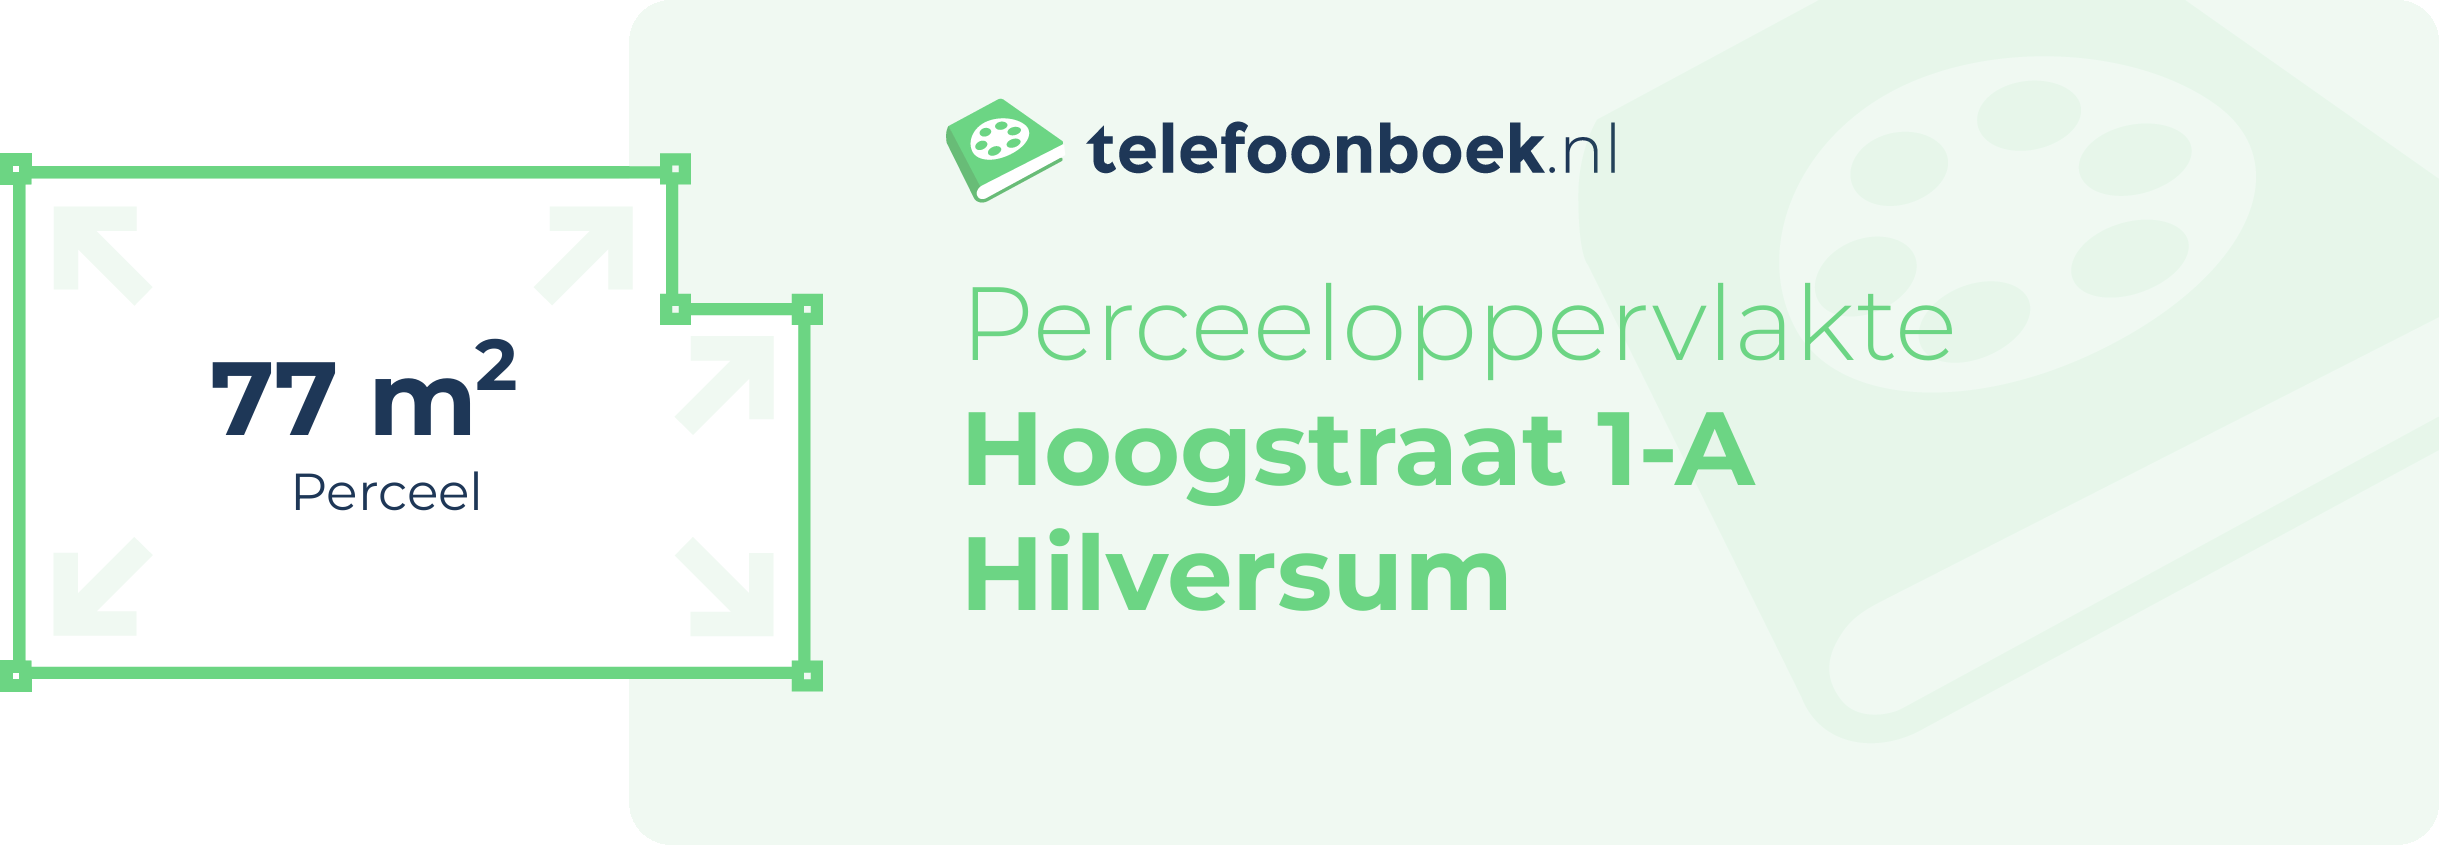 Perceeloppervlakte Hoogstraat 1-A Hilversum